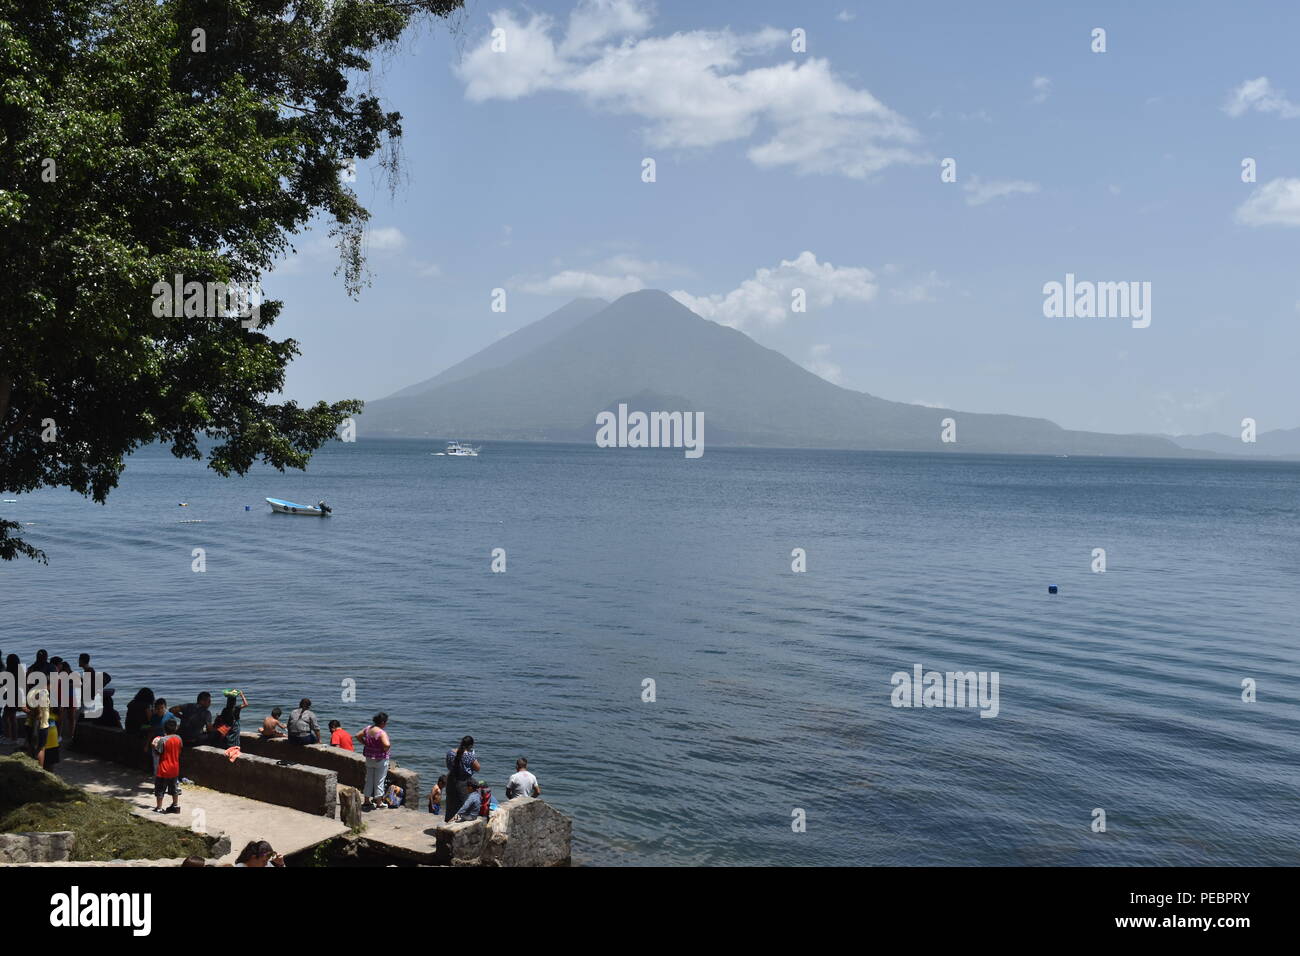 Un jour dans le lac Panajachel au Guatemala au milieu de trois volcans. Juillet 14, 2018 Banque D'Images